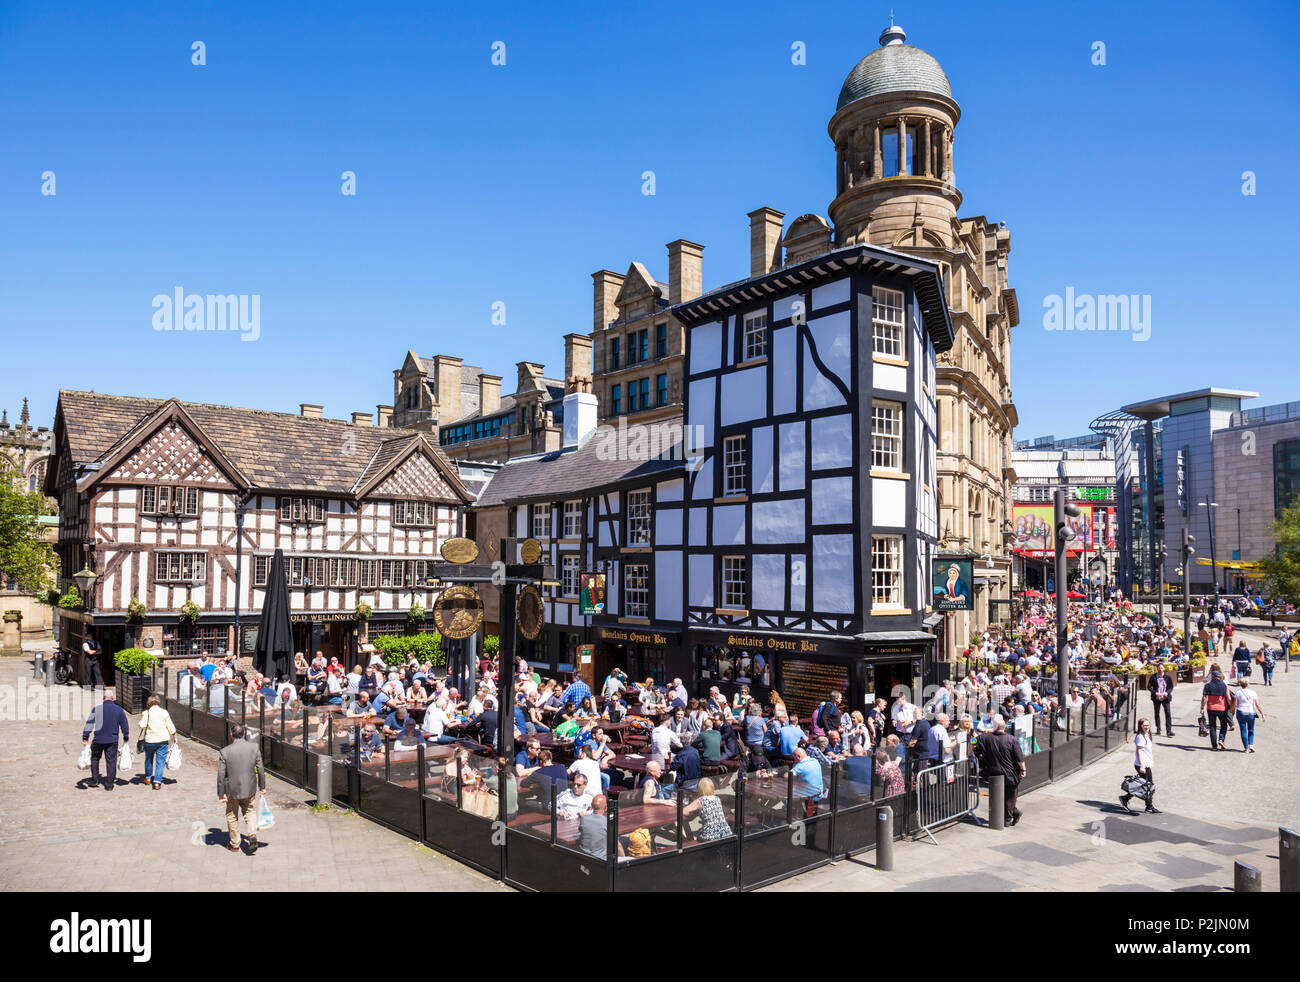 Affollata del Sinclair Oyster Bar e il vecchio Wellington public house Cathedral Gates il centro città di Manchester Inghilterra UK GB EU Europe Foto Stock